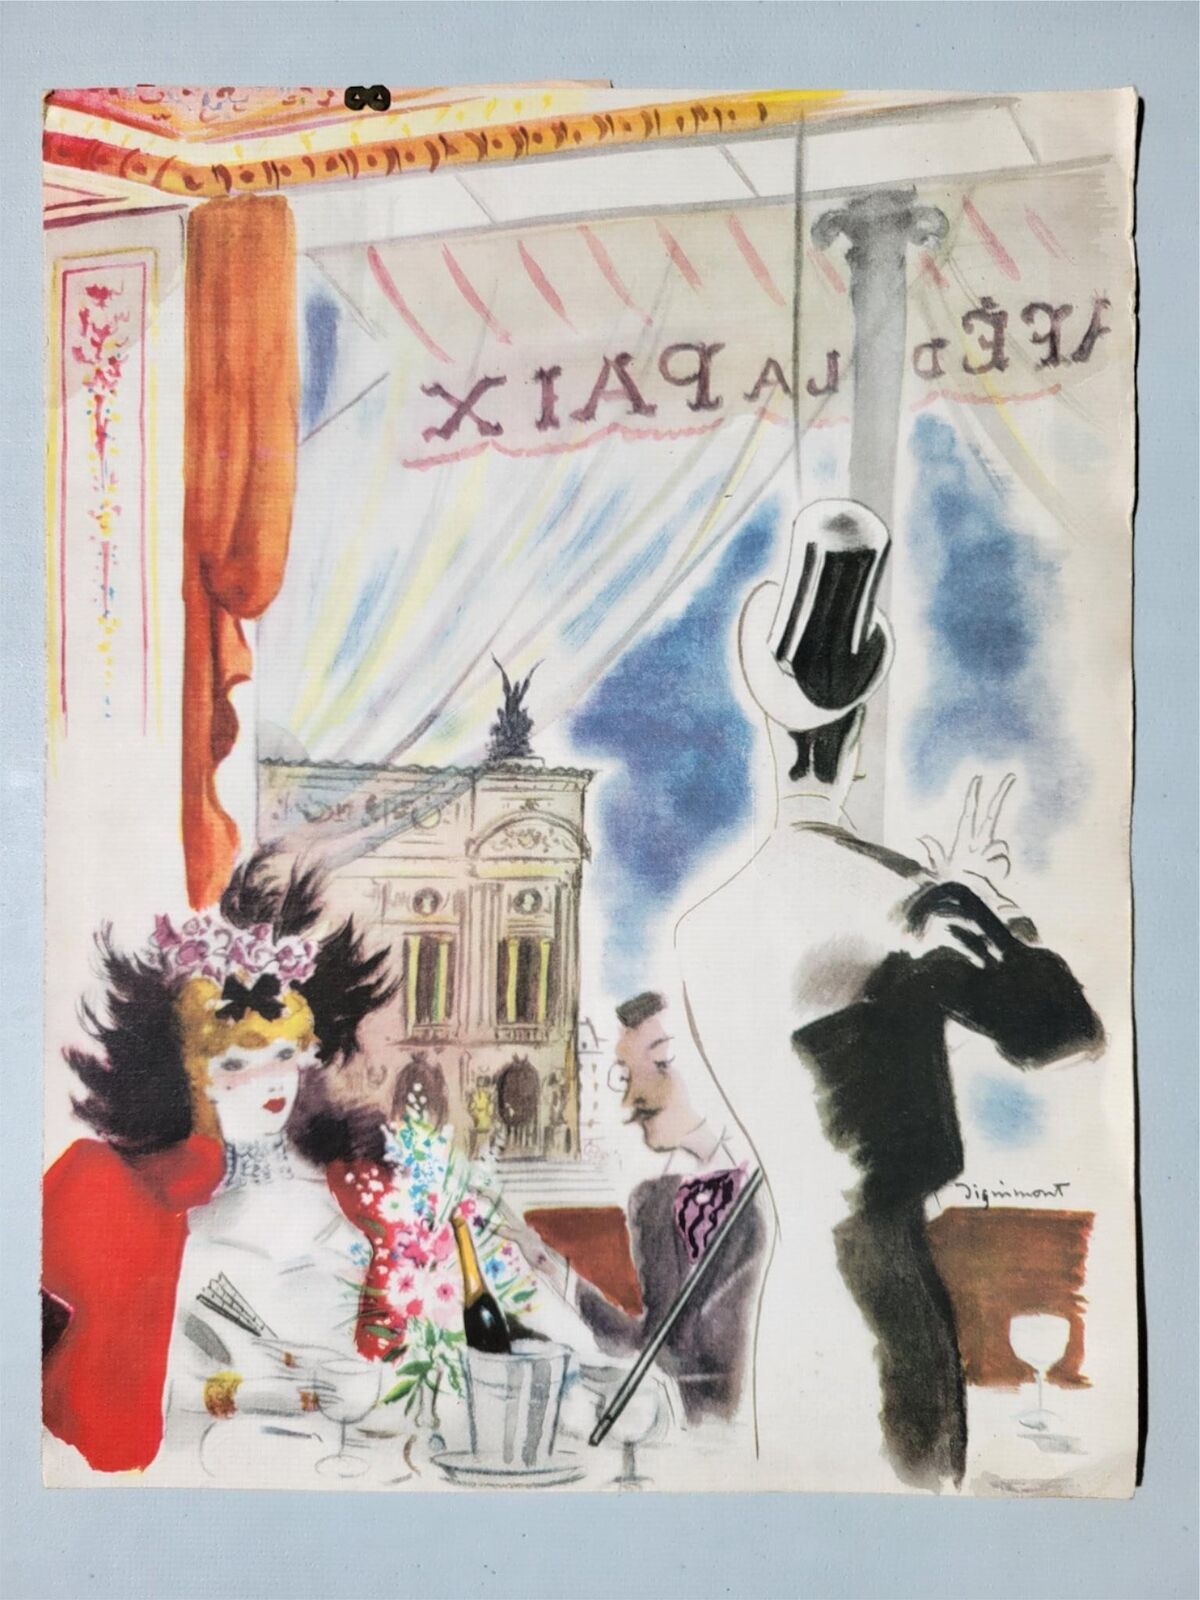 July 23 1956 Café de la Paix Paris Opera artist Dignimont Menu Vintage Original